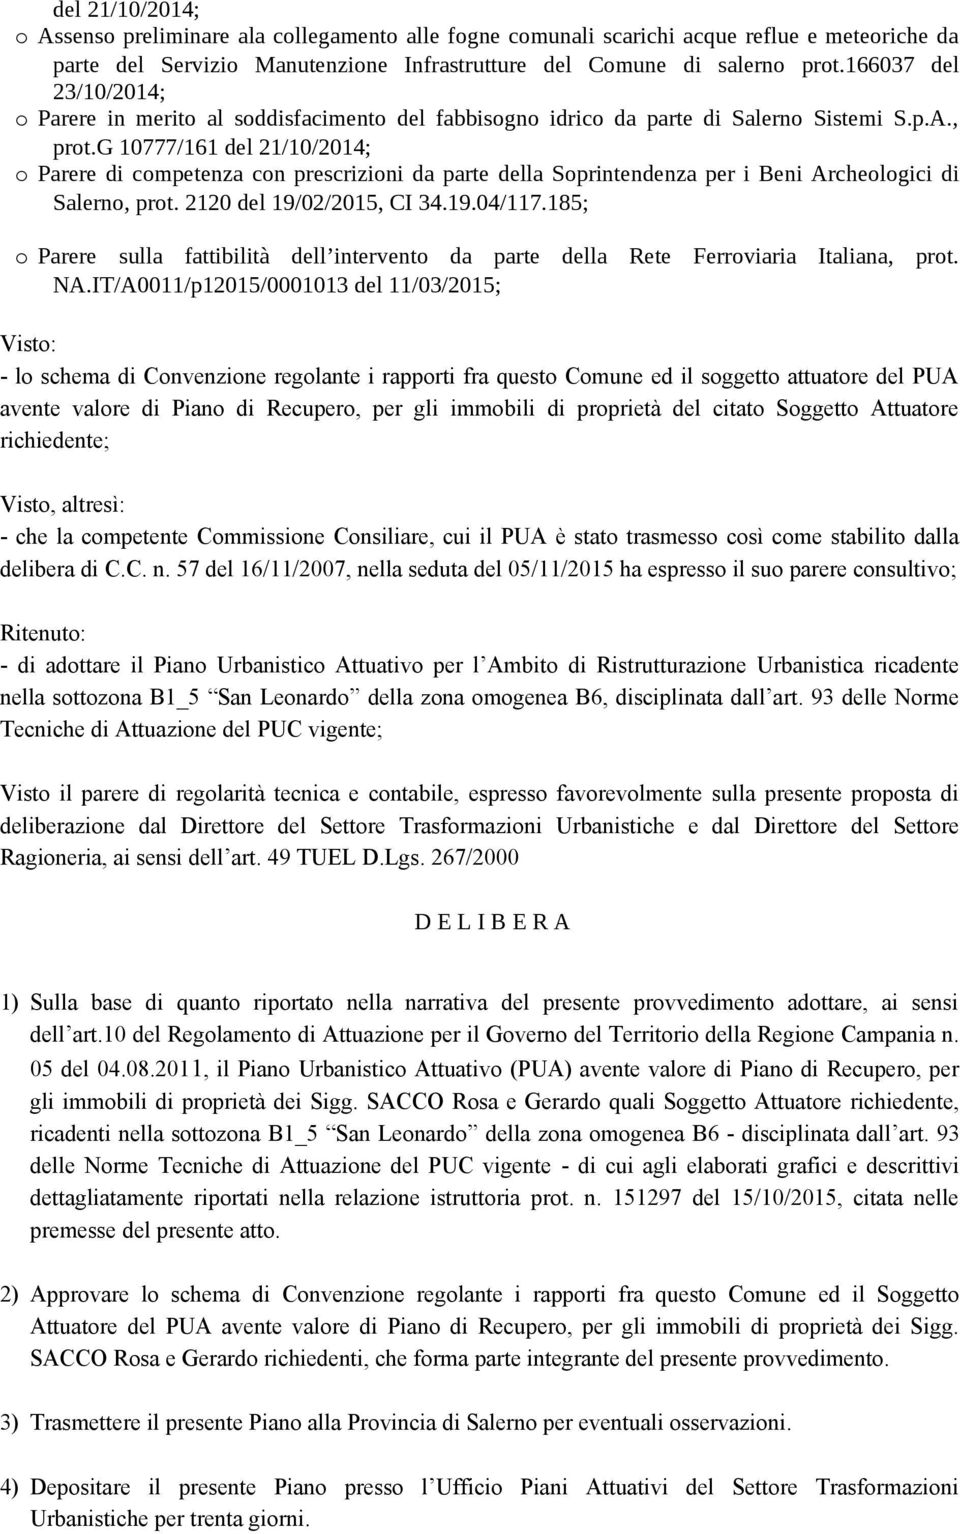 g 10777/161 del 21/10/2014; o arere di competenza con prescrizioni da parte della Soprintendenza per i Beni Archeologici di Salerno, prot. 2120 del 19/02/2015, CI 34.19.04/117.